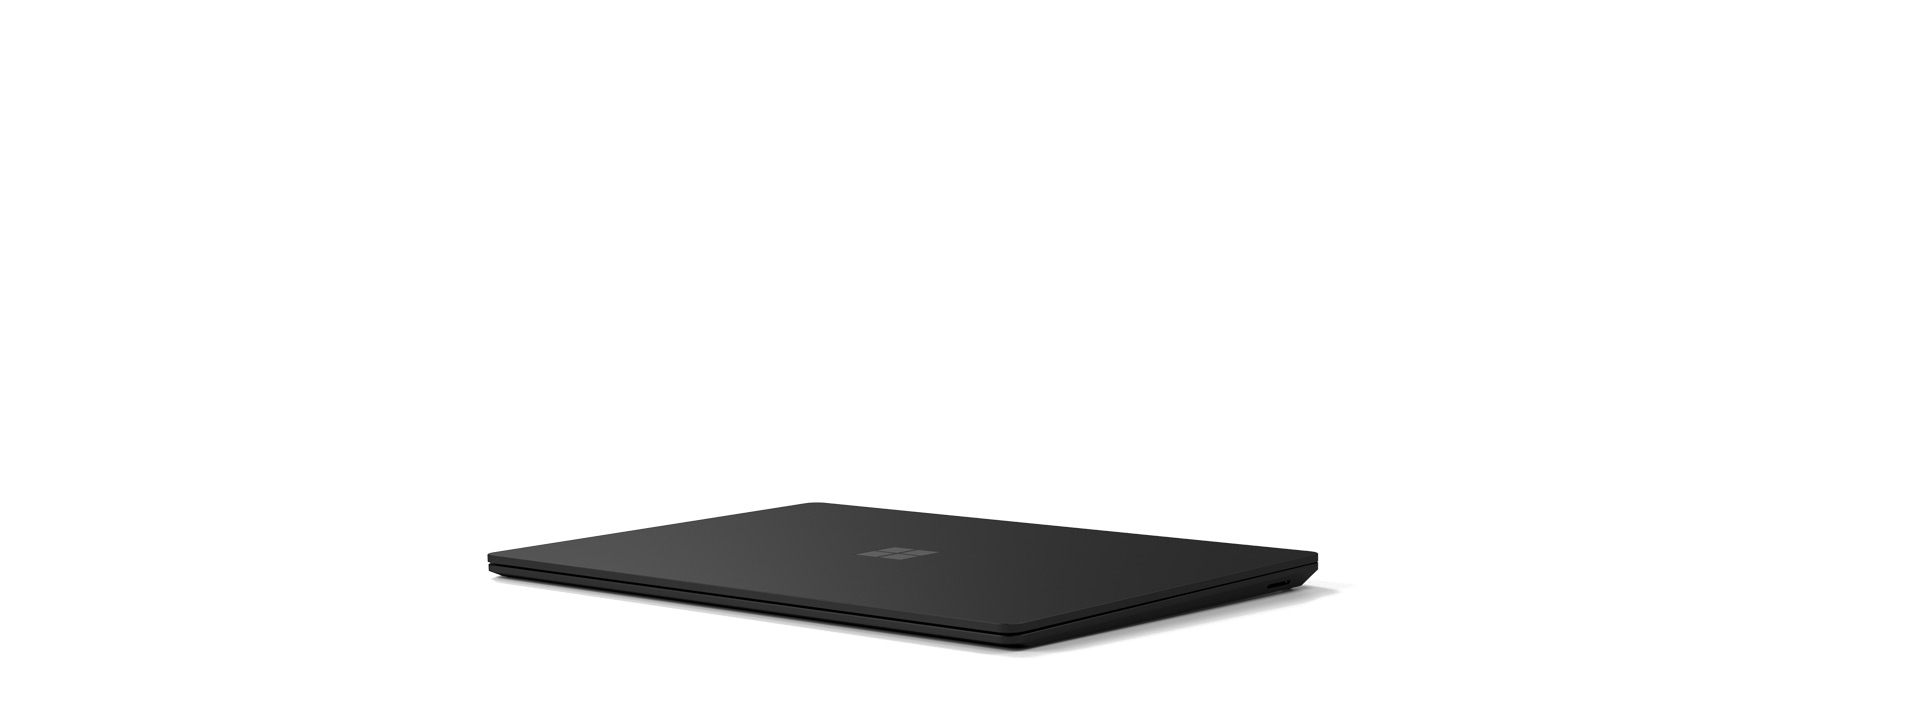 Een Surface Laptop 4 wordt getoond in de gesloten stand.